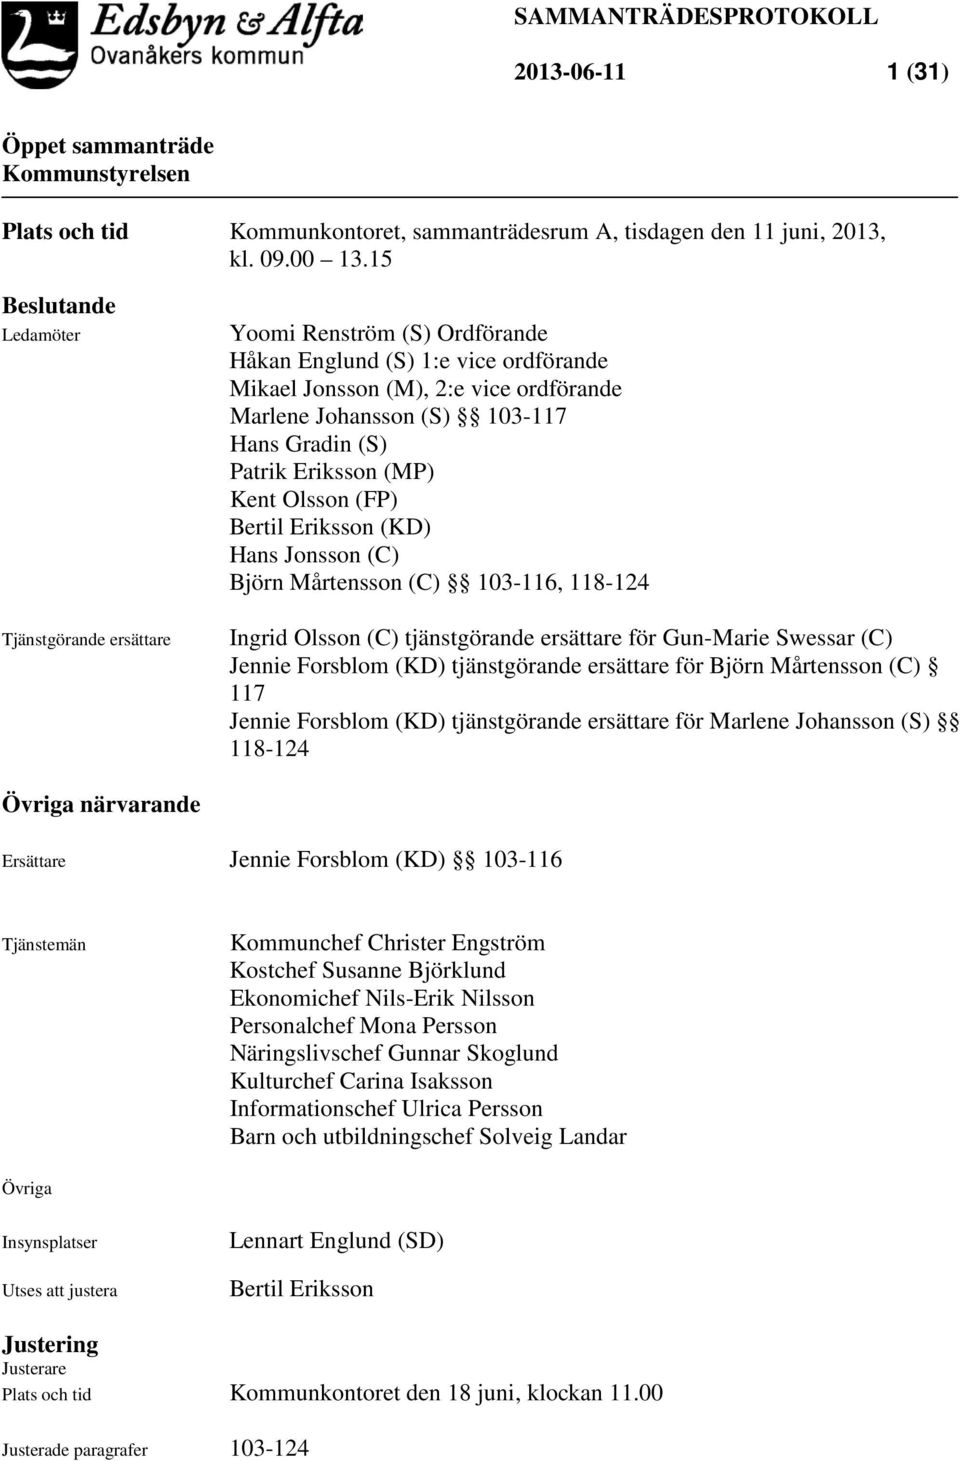 (S) Patrik Eriksson (MP) Kent Olsson (FP) Bertil Eriksson (KD) Hans Jonsson (C) Björn Mårtensson (C) 103-116, 118-124 Ingrid Olsson (C) tjänstgörande ersättare för Gun-Marie Swessar (C) Jennie